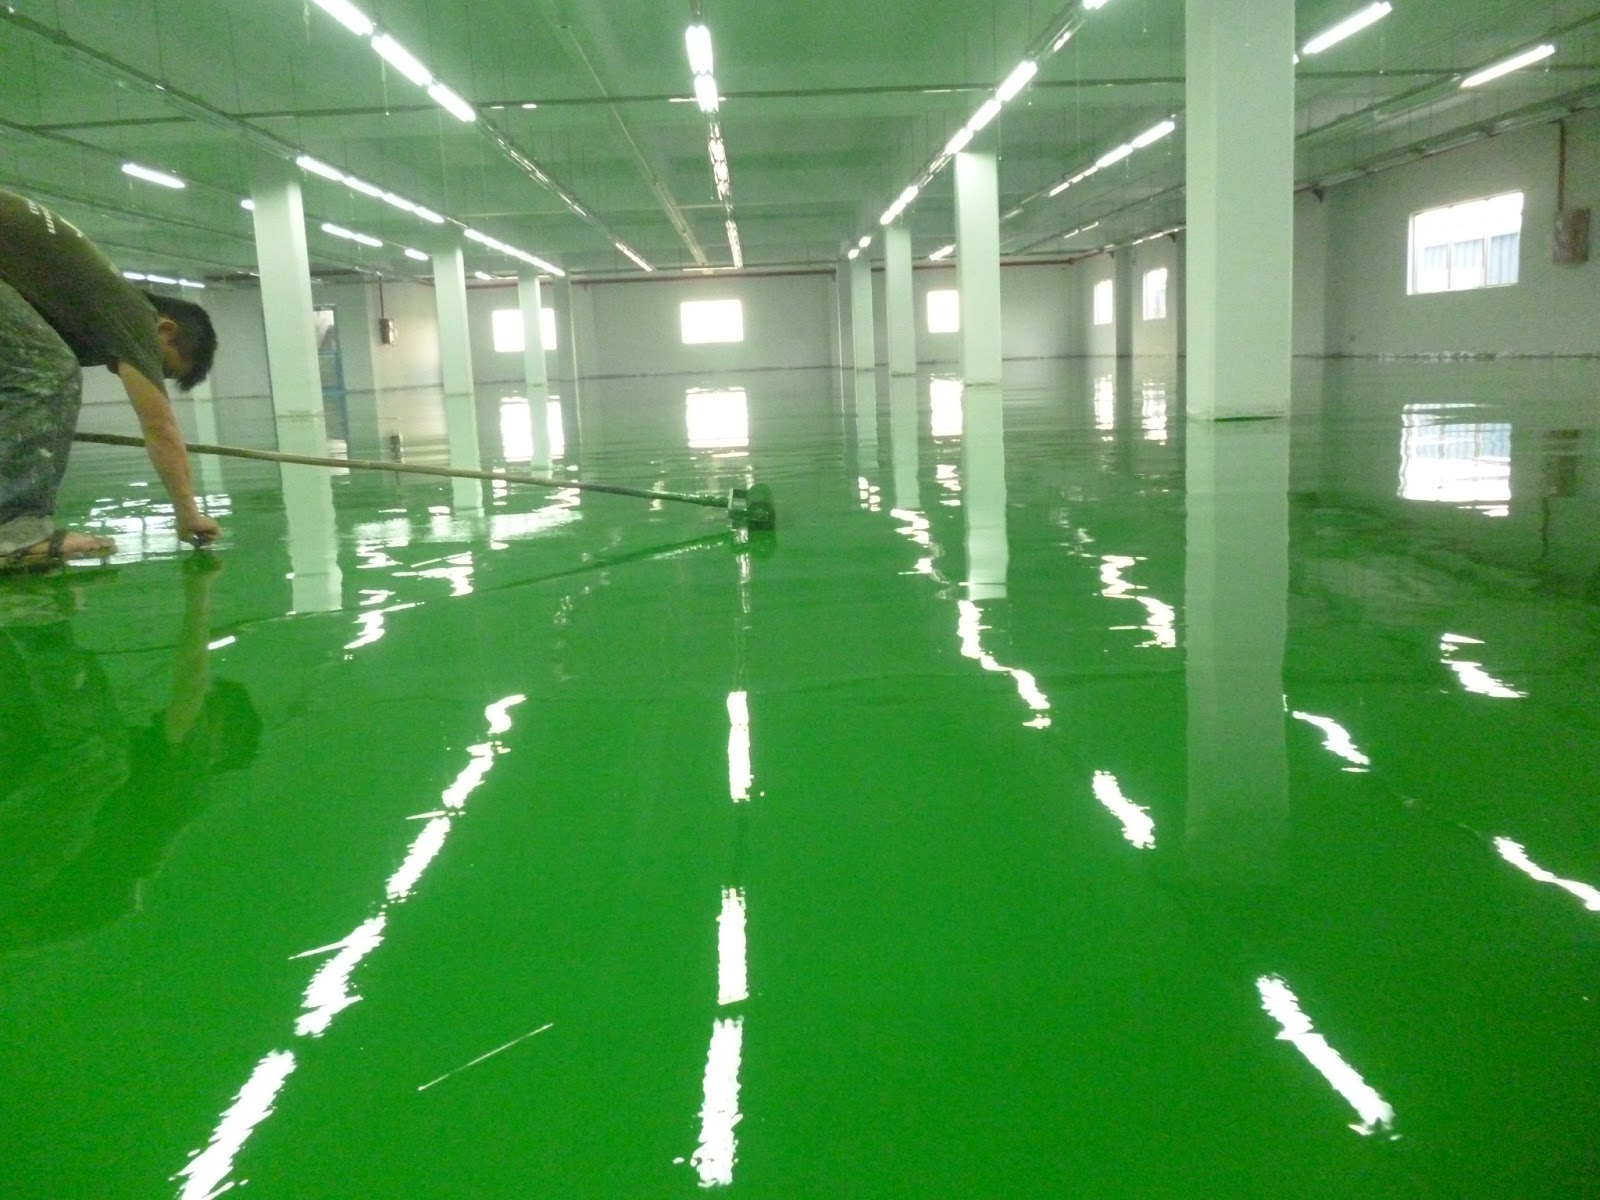 Báo giá thi công sơn sàn Epoxy rẻ nhất Việt Nam và sự hỗ trợ của Sika nền nhà xưởng sẽ giúp cho công trình của bạn trở nên đẹp hơn, bền bỉ hơn và tiết kiệm chi phí hơn. Nếu bạn đang quan tâm đến việc đầu tư cho công trình của mình, hãy xem hình ảnh để thấy rõ sự chuyên nghiệp và hiệu quả của Sika Floor Chapdur Green/Grey.